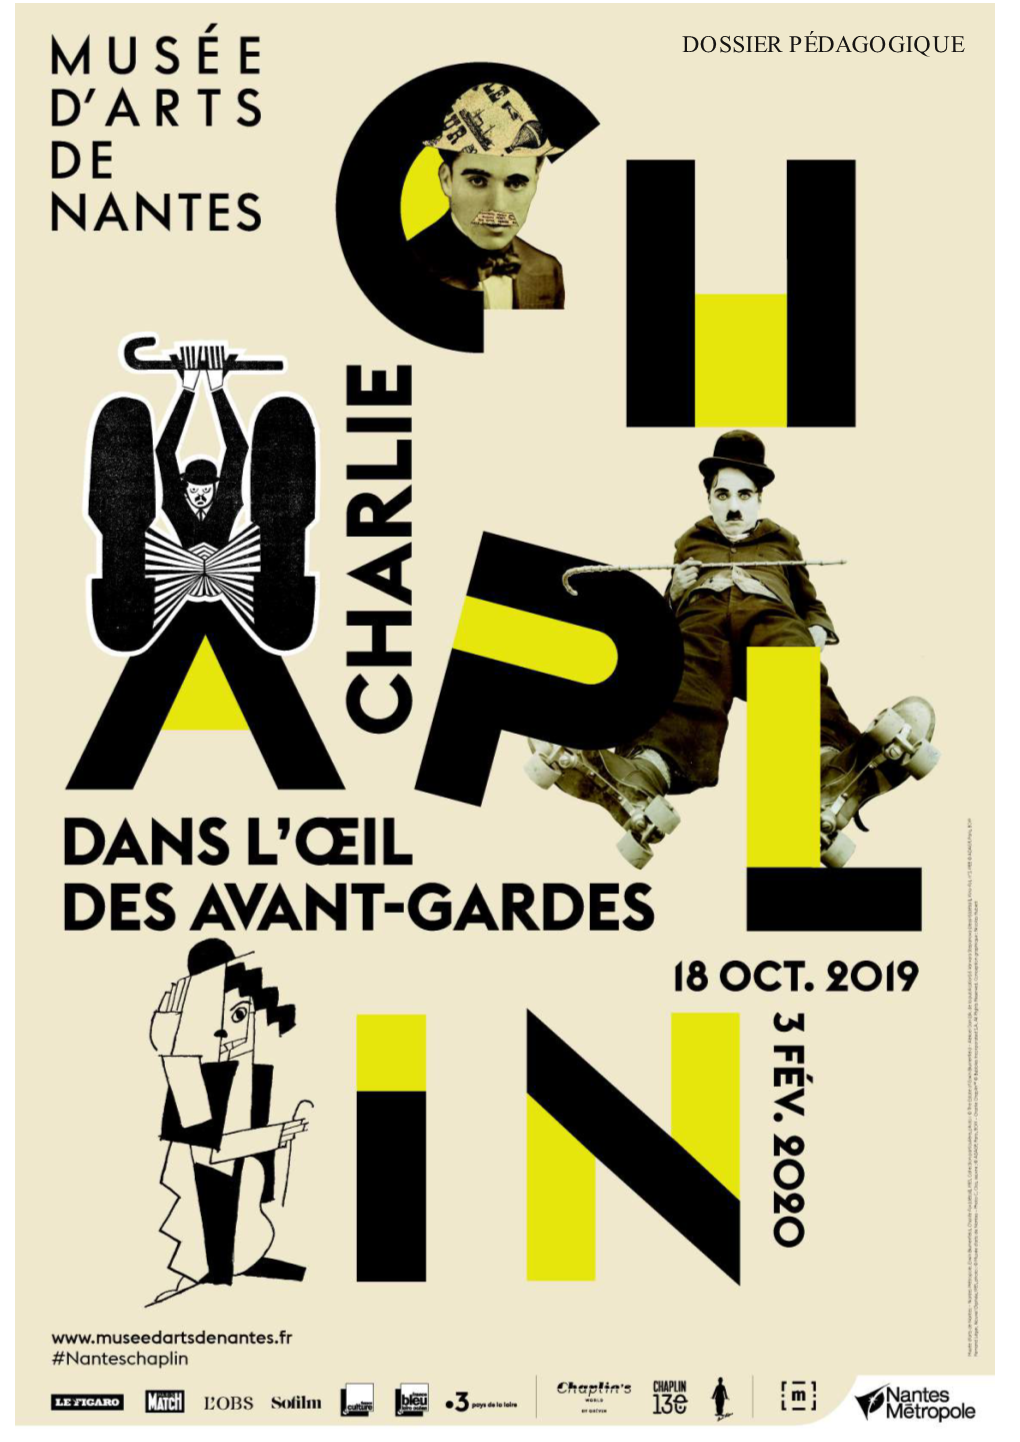 Dossier Pédagogique Charlie Chaplin.Pdf